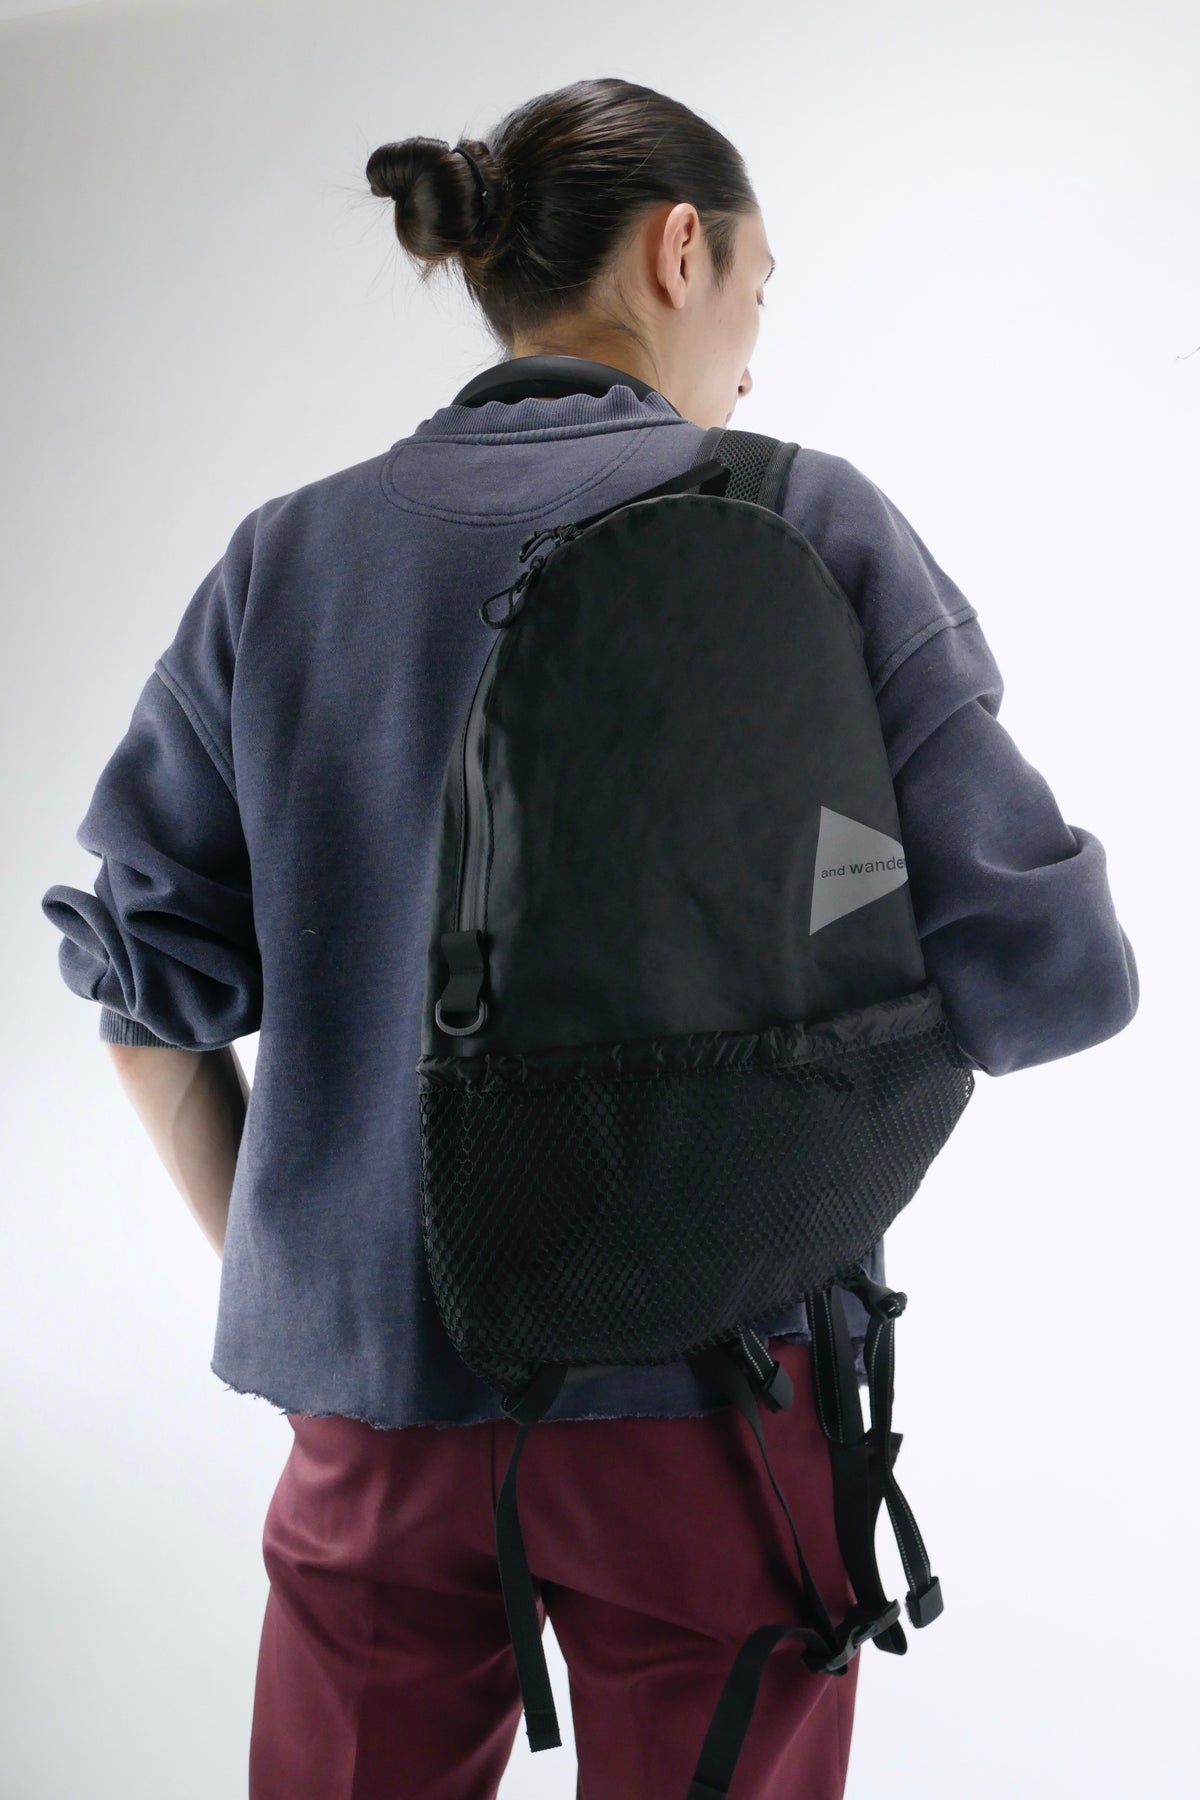 and Wander Waterproof Daypack Backpack - Black